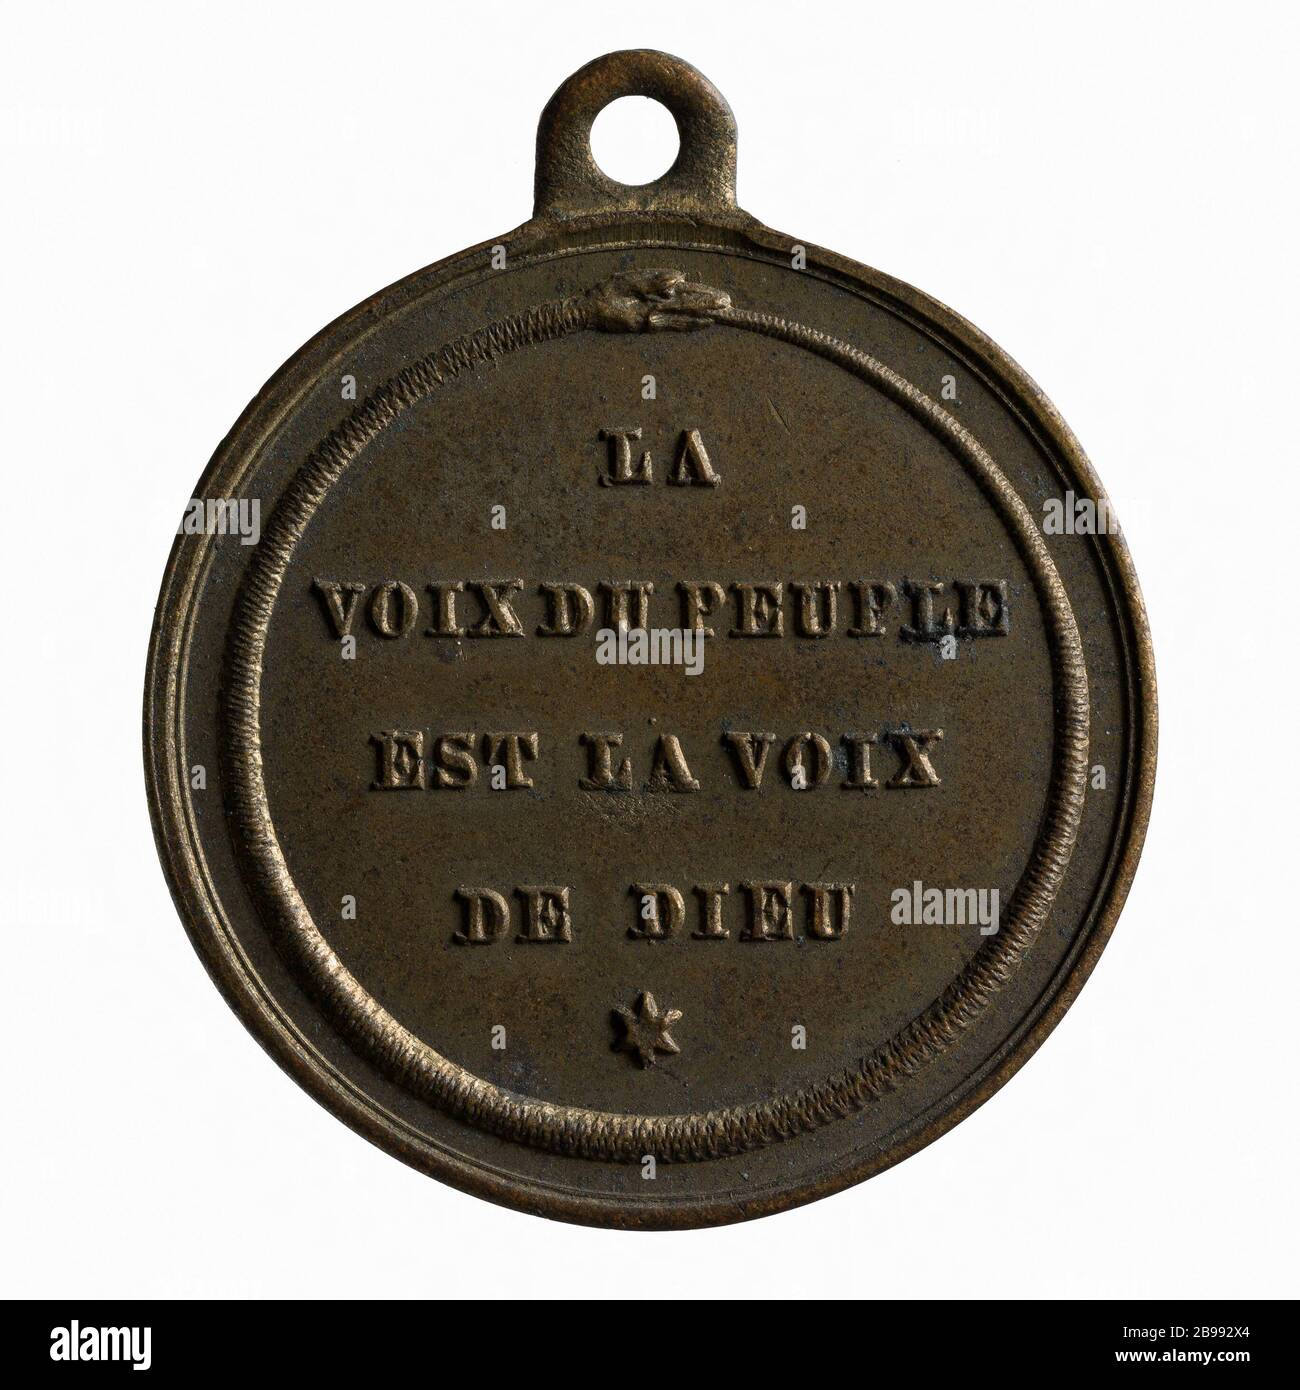 Wahlvereinigung des Departements seine, 1849 (Dummy-Titel) Médaille de Association électorale du départemental de la seine, 1849. Paris, musée Carnavalet. Stockfoto